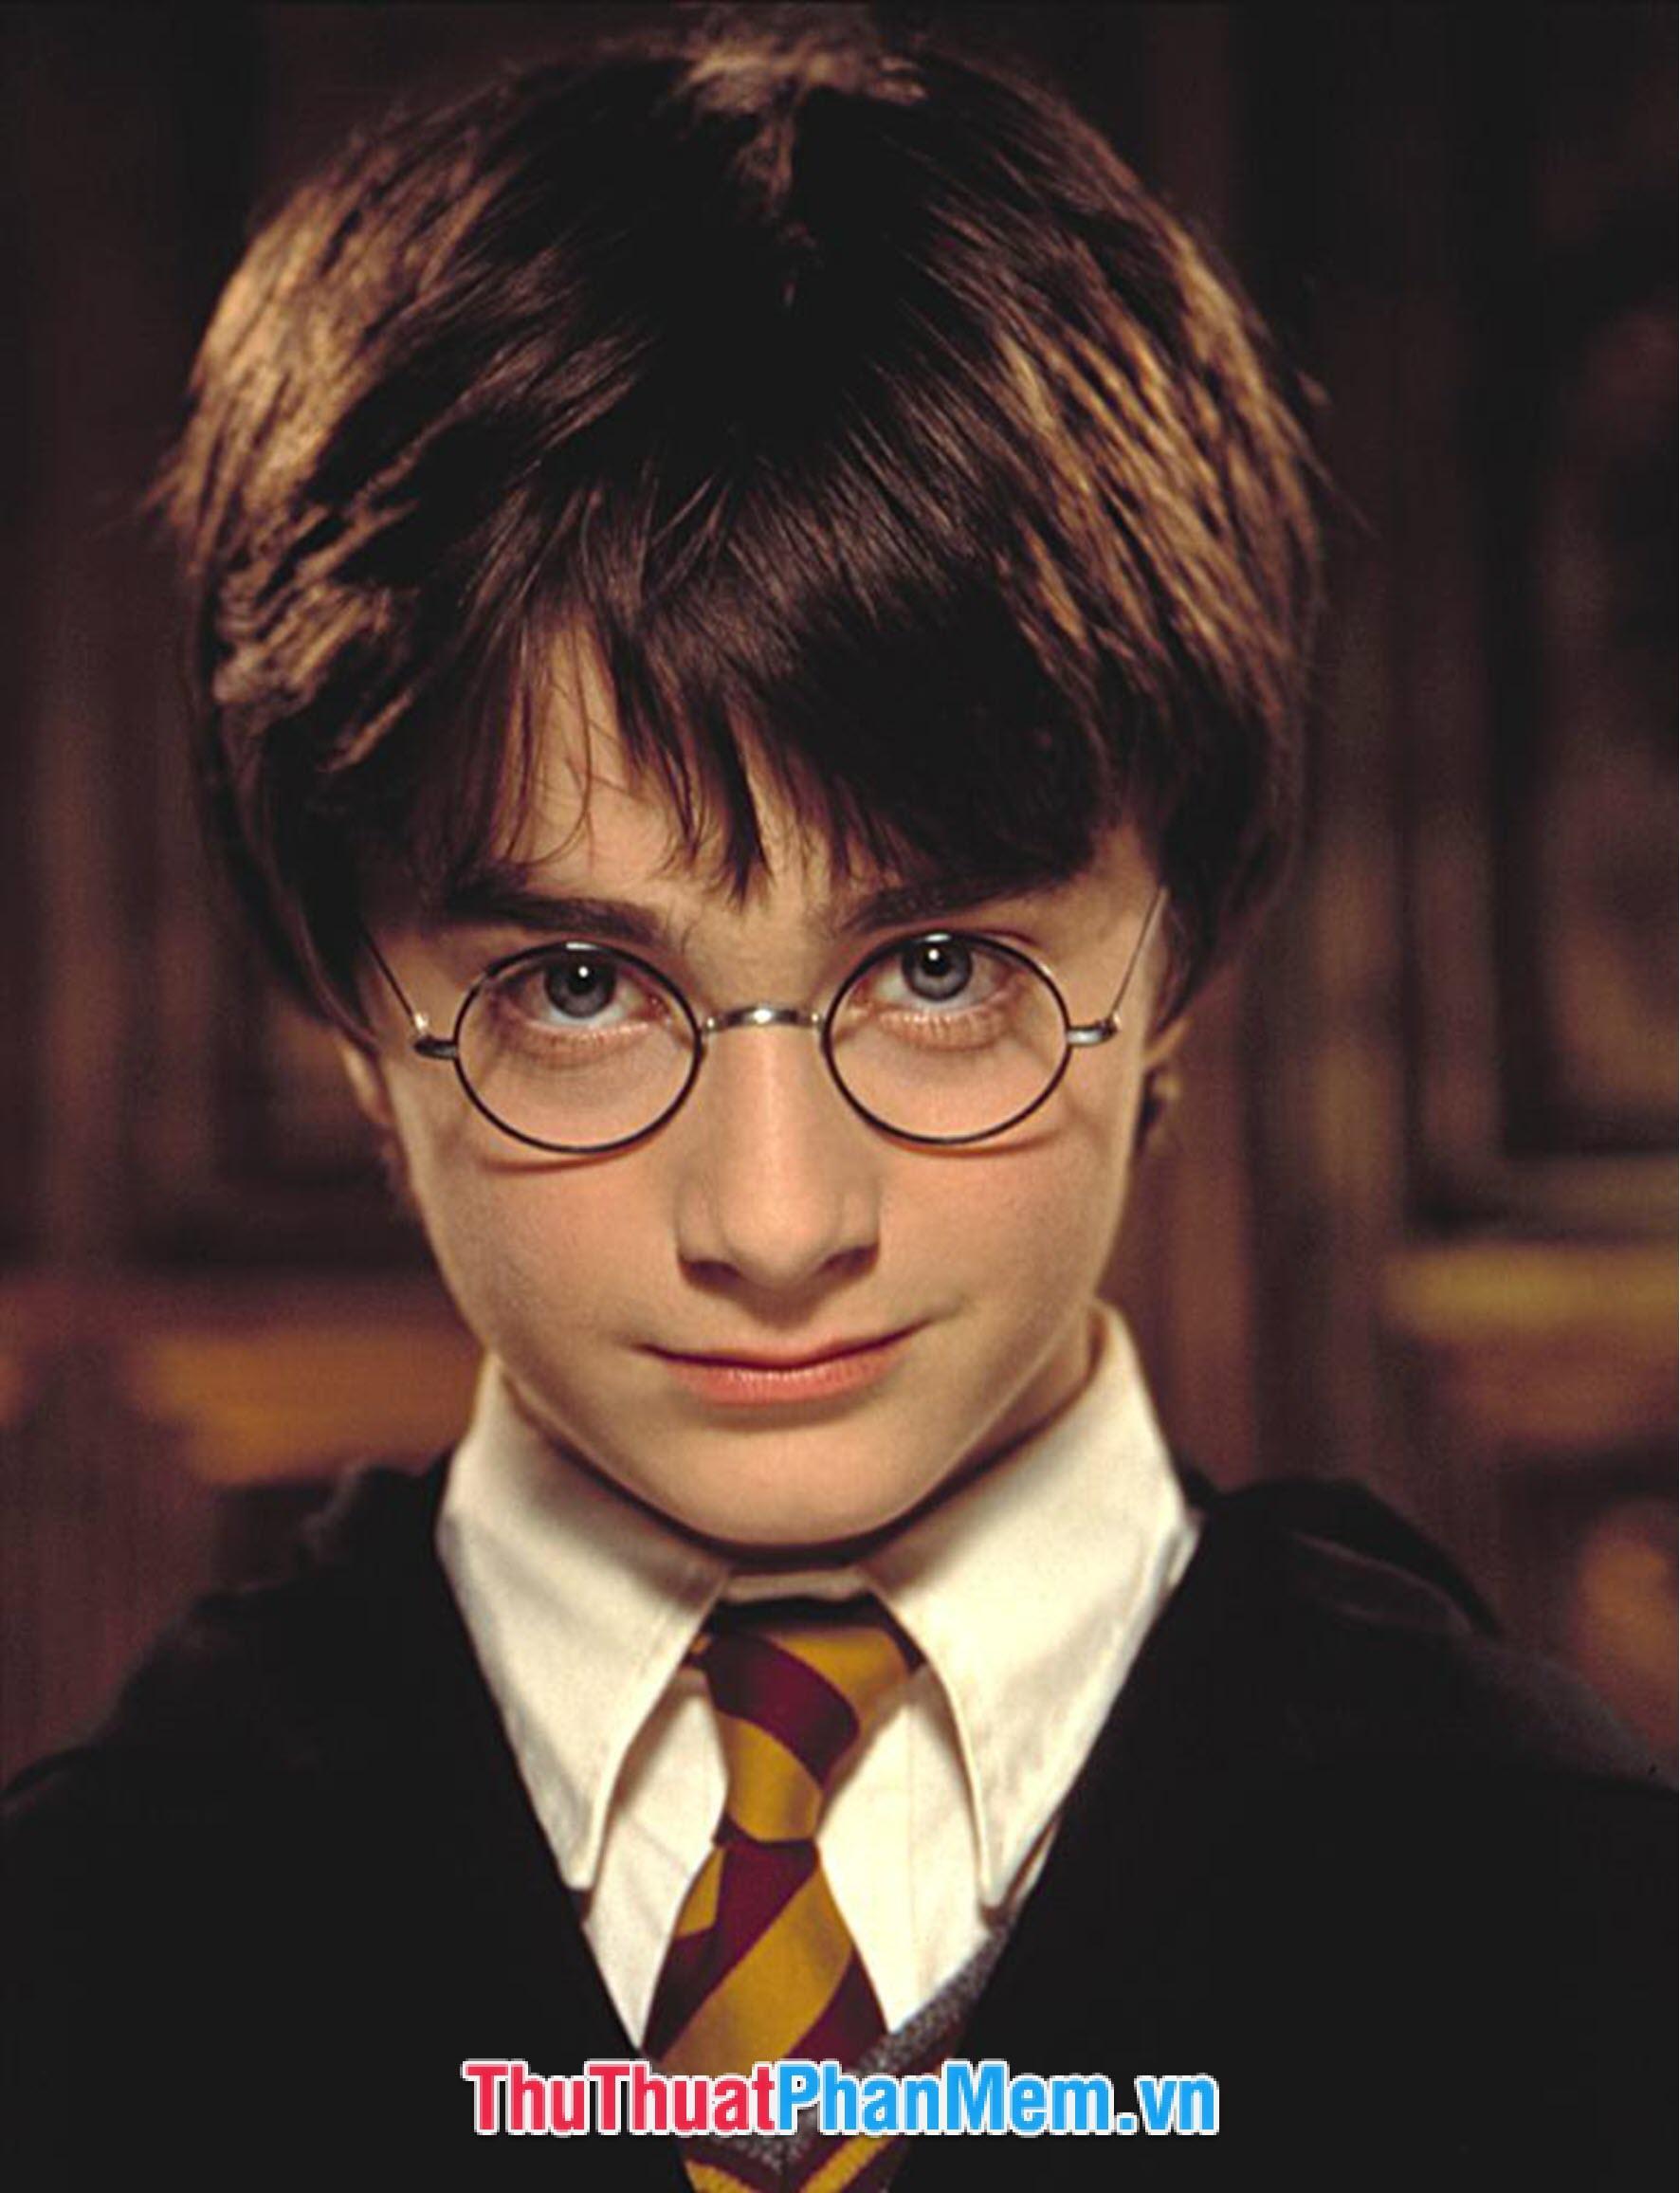 Bài thi viết UPU lần thứ 48 với người hùng là Harry Potter